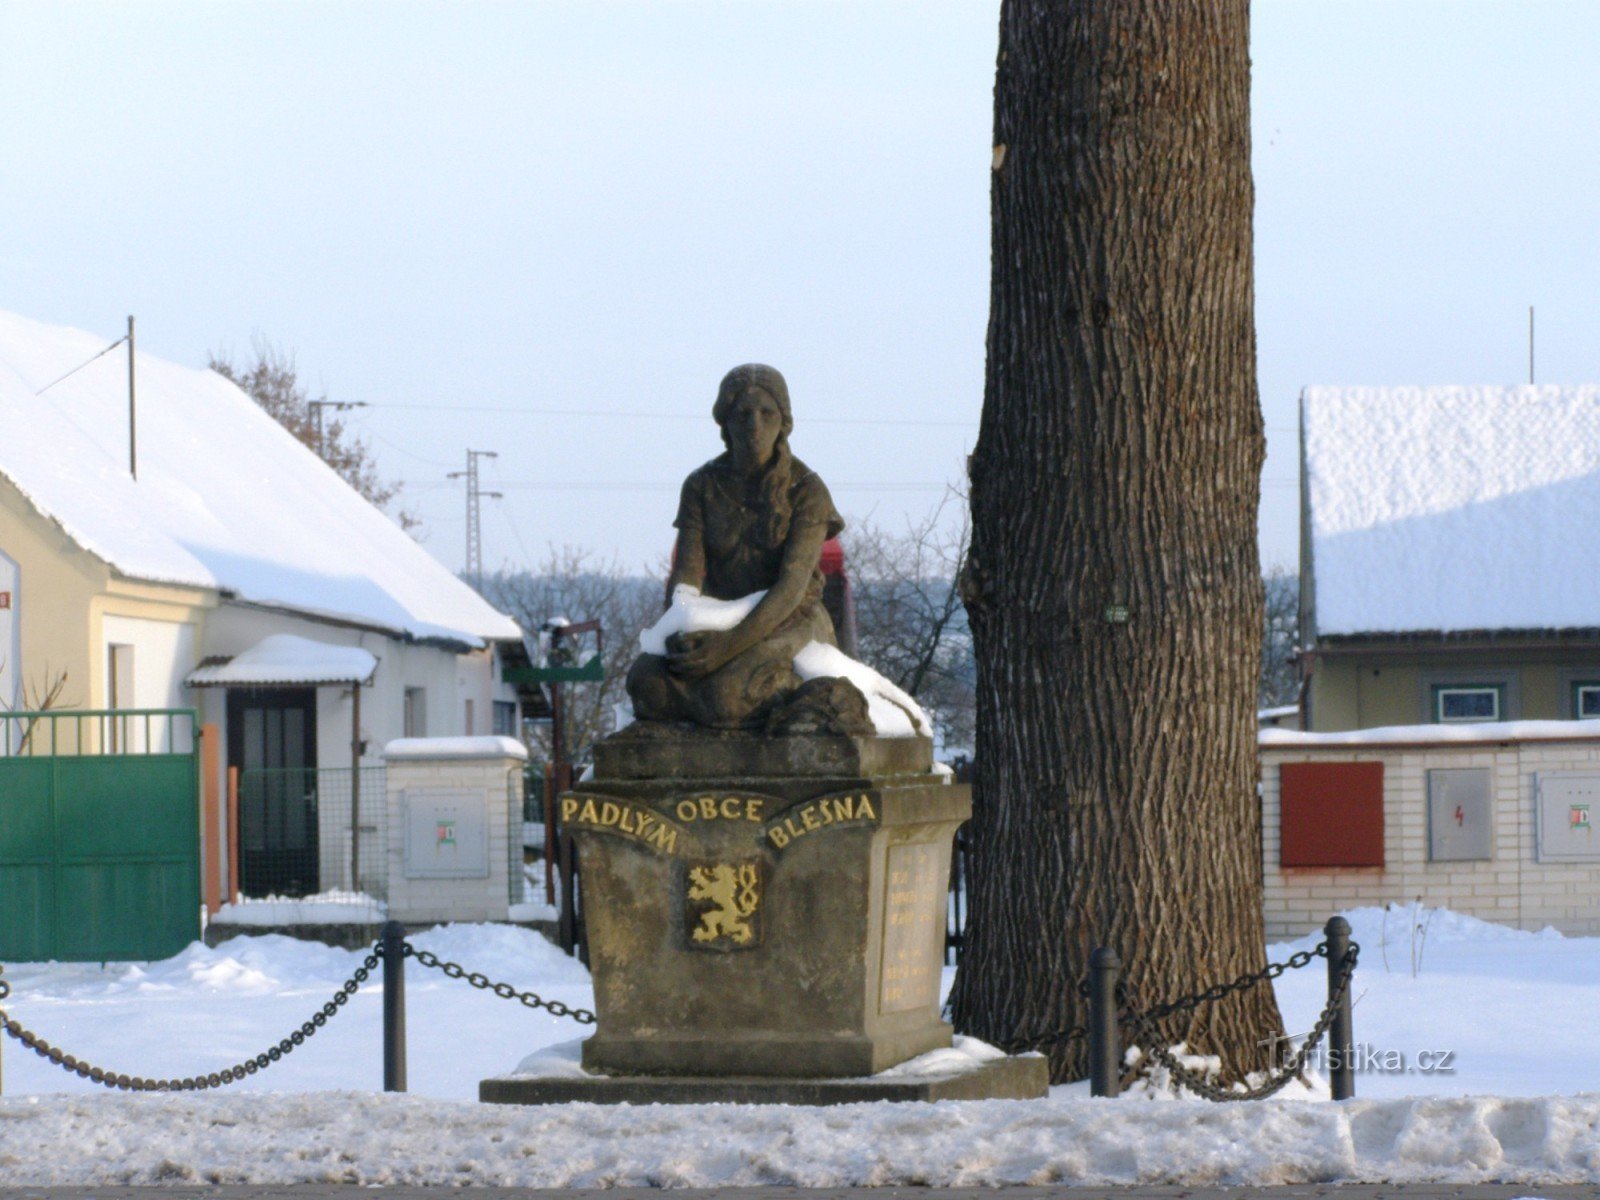 ブレシュノ - 戦争犠牲者の記念碑